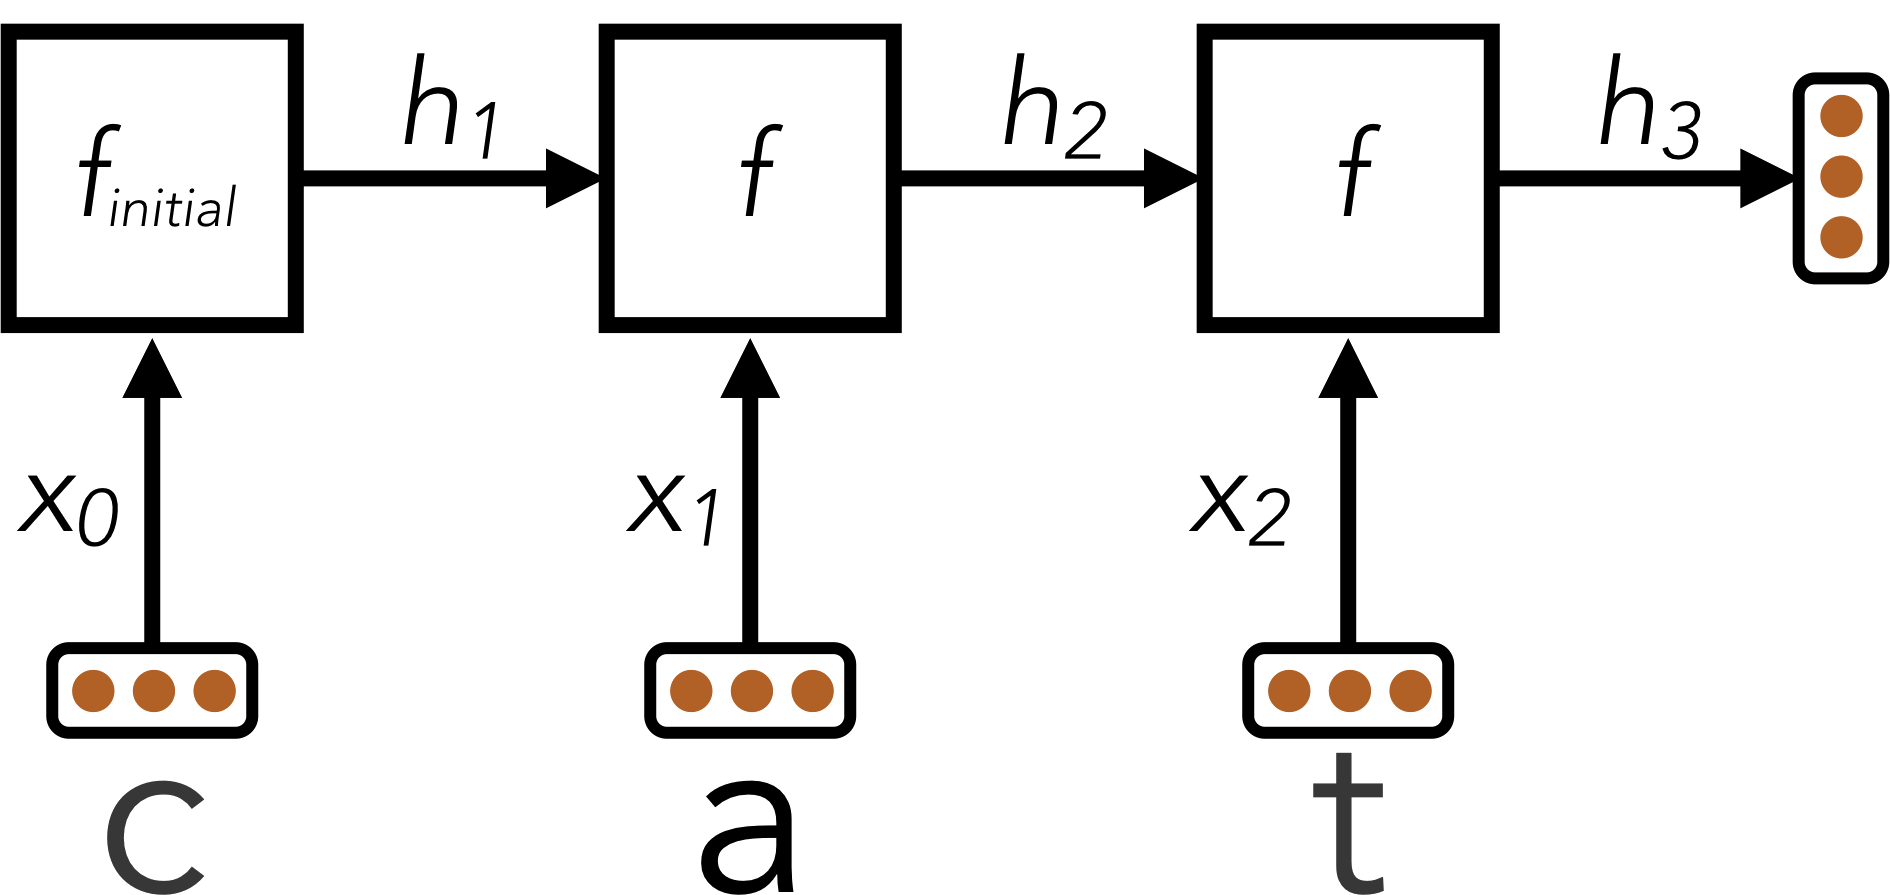 RNN network architecture